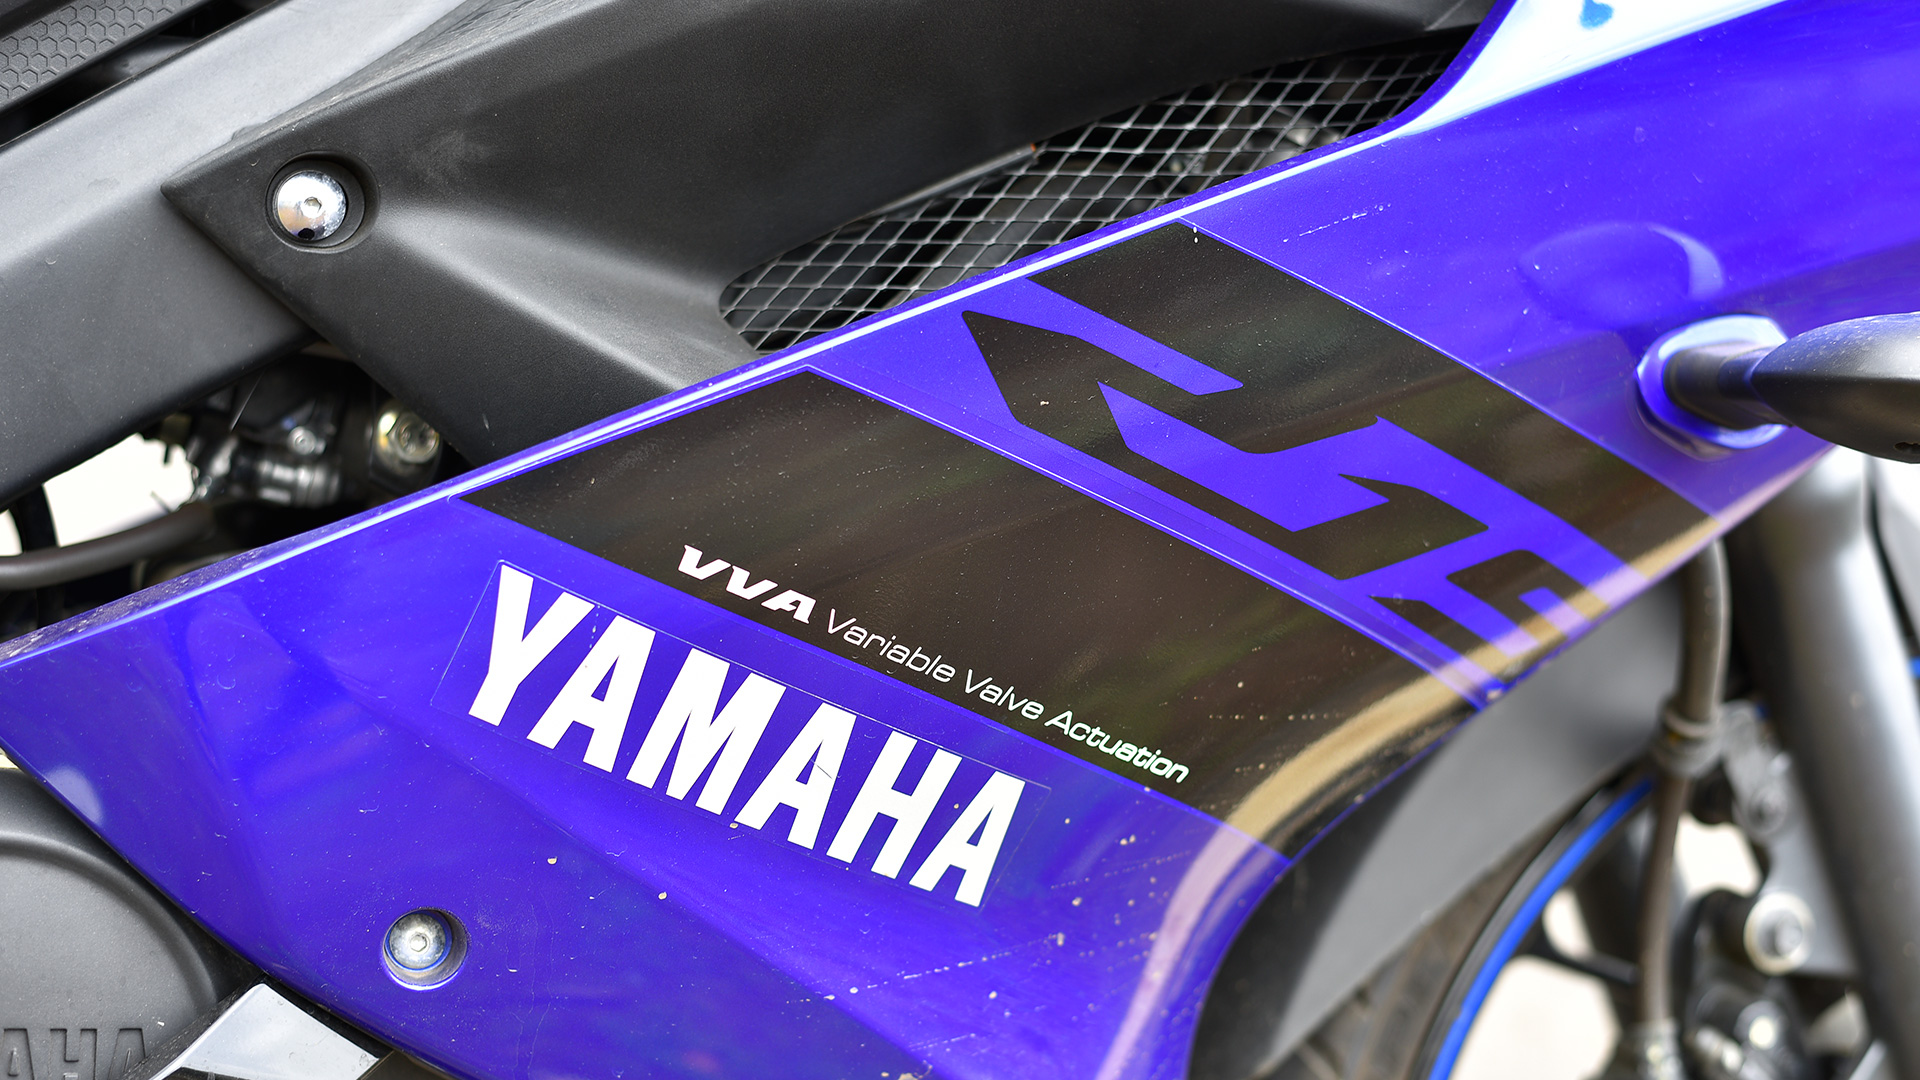 Yamaha YZF-R15 V3.0 2018 STD